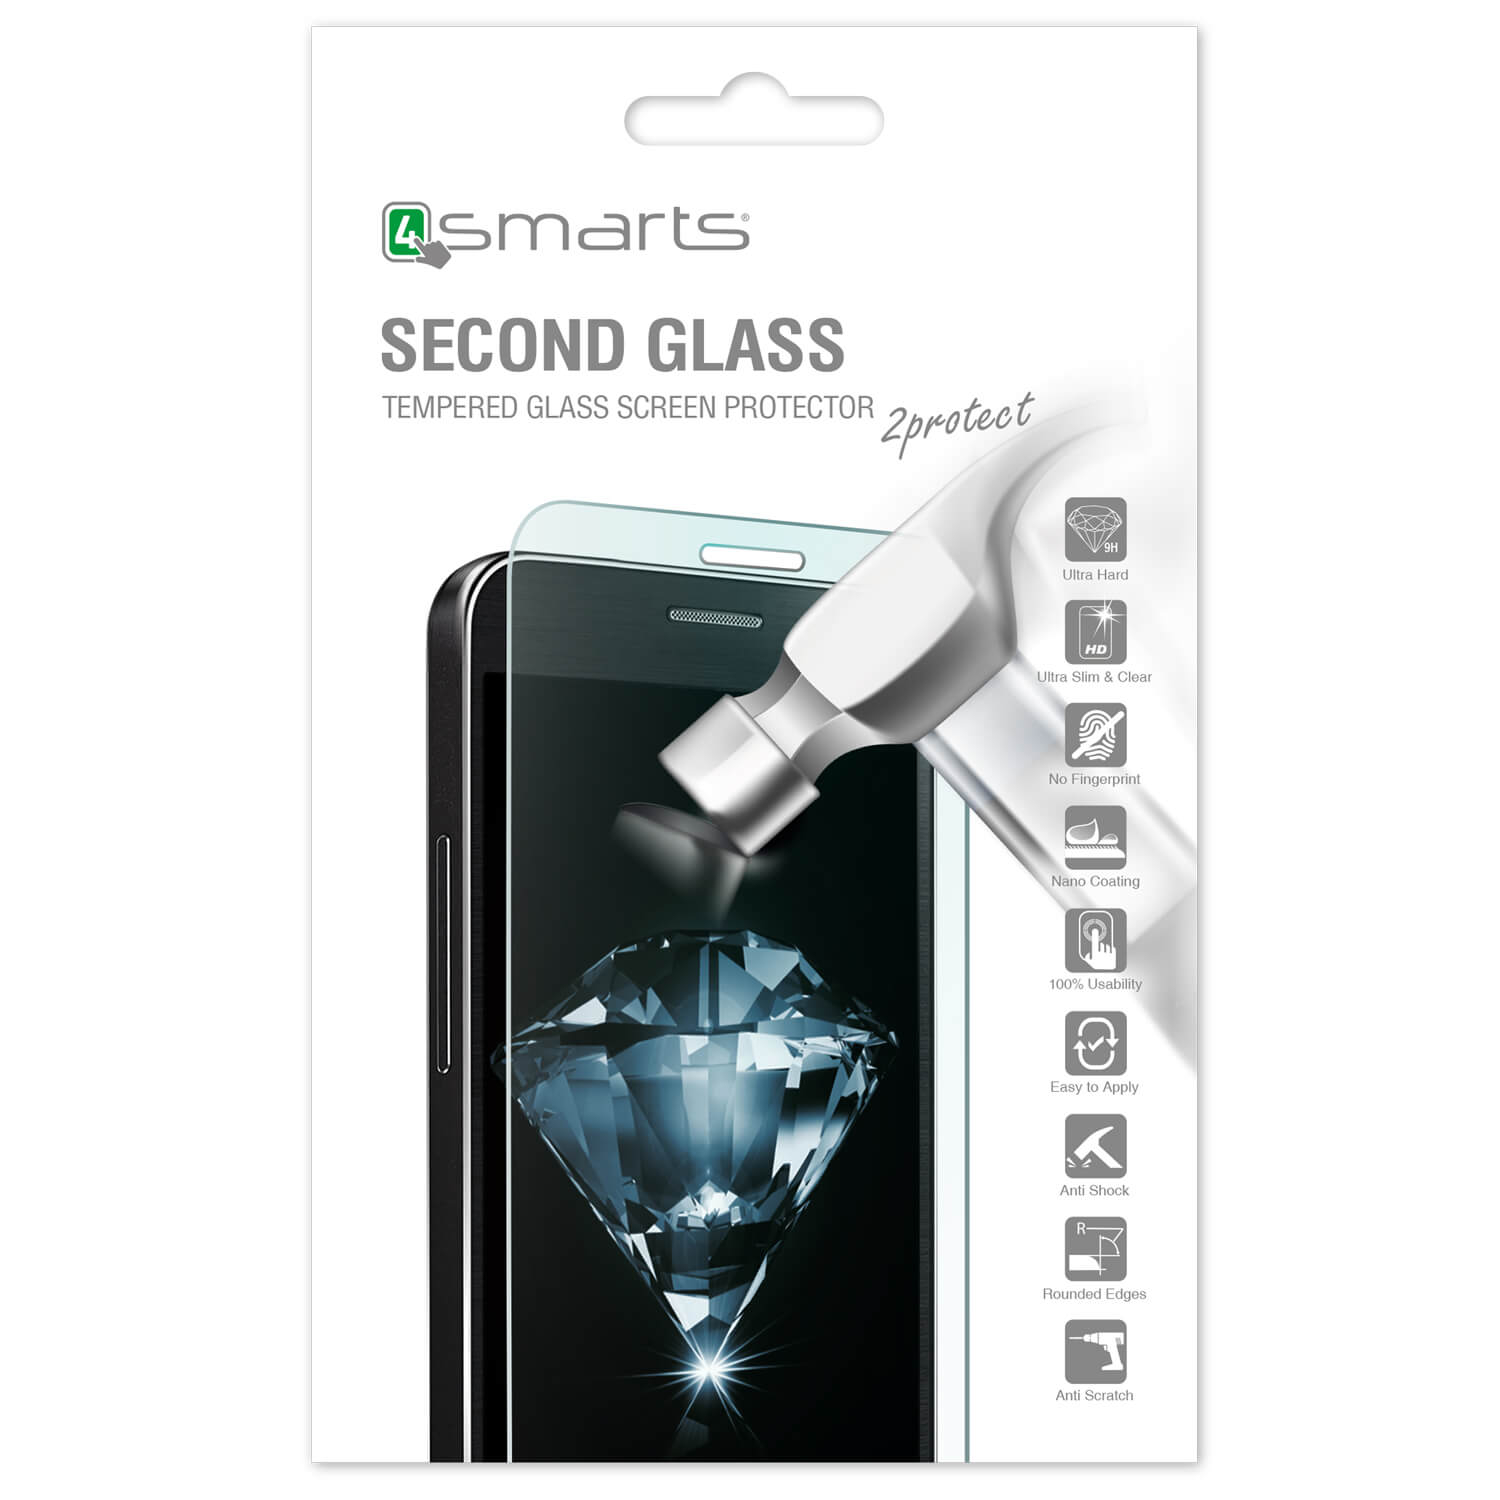 4smarts Second Glass - калено стъклено защитно покритие за дисплея на Samsung Galaxy J1 (2016) (прозрачен)